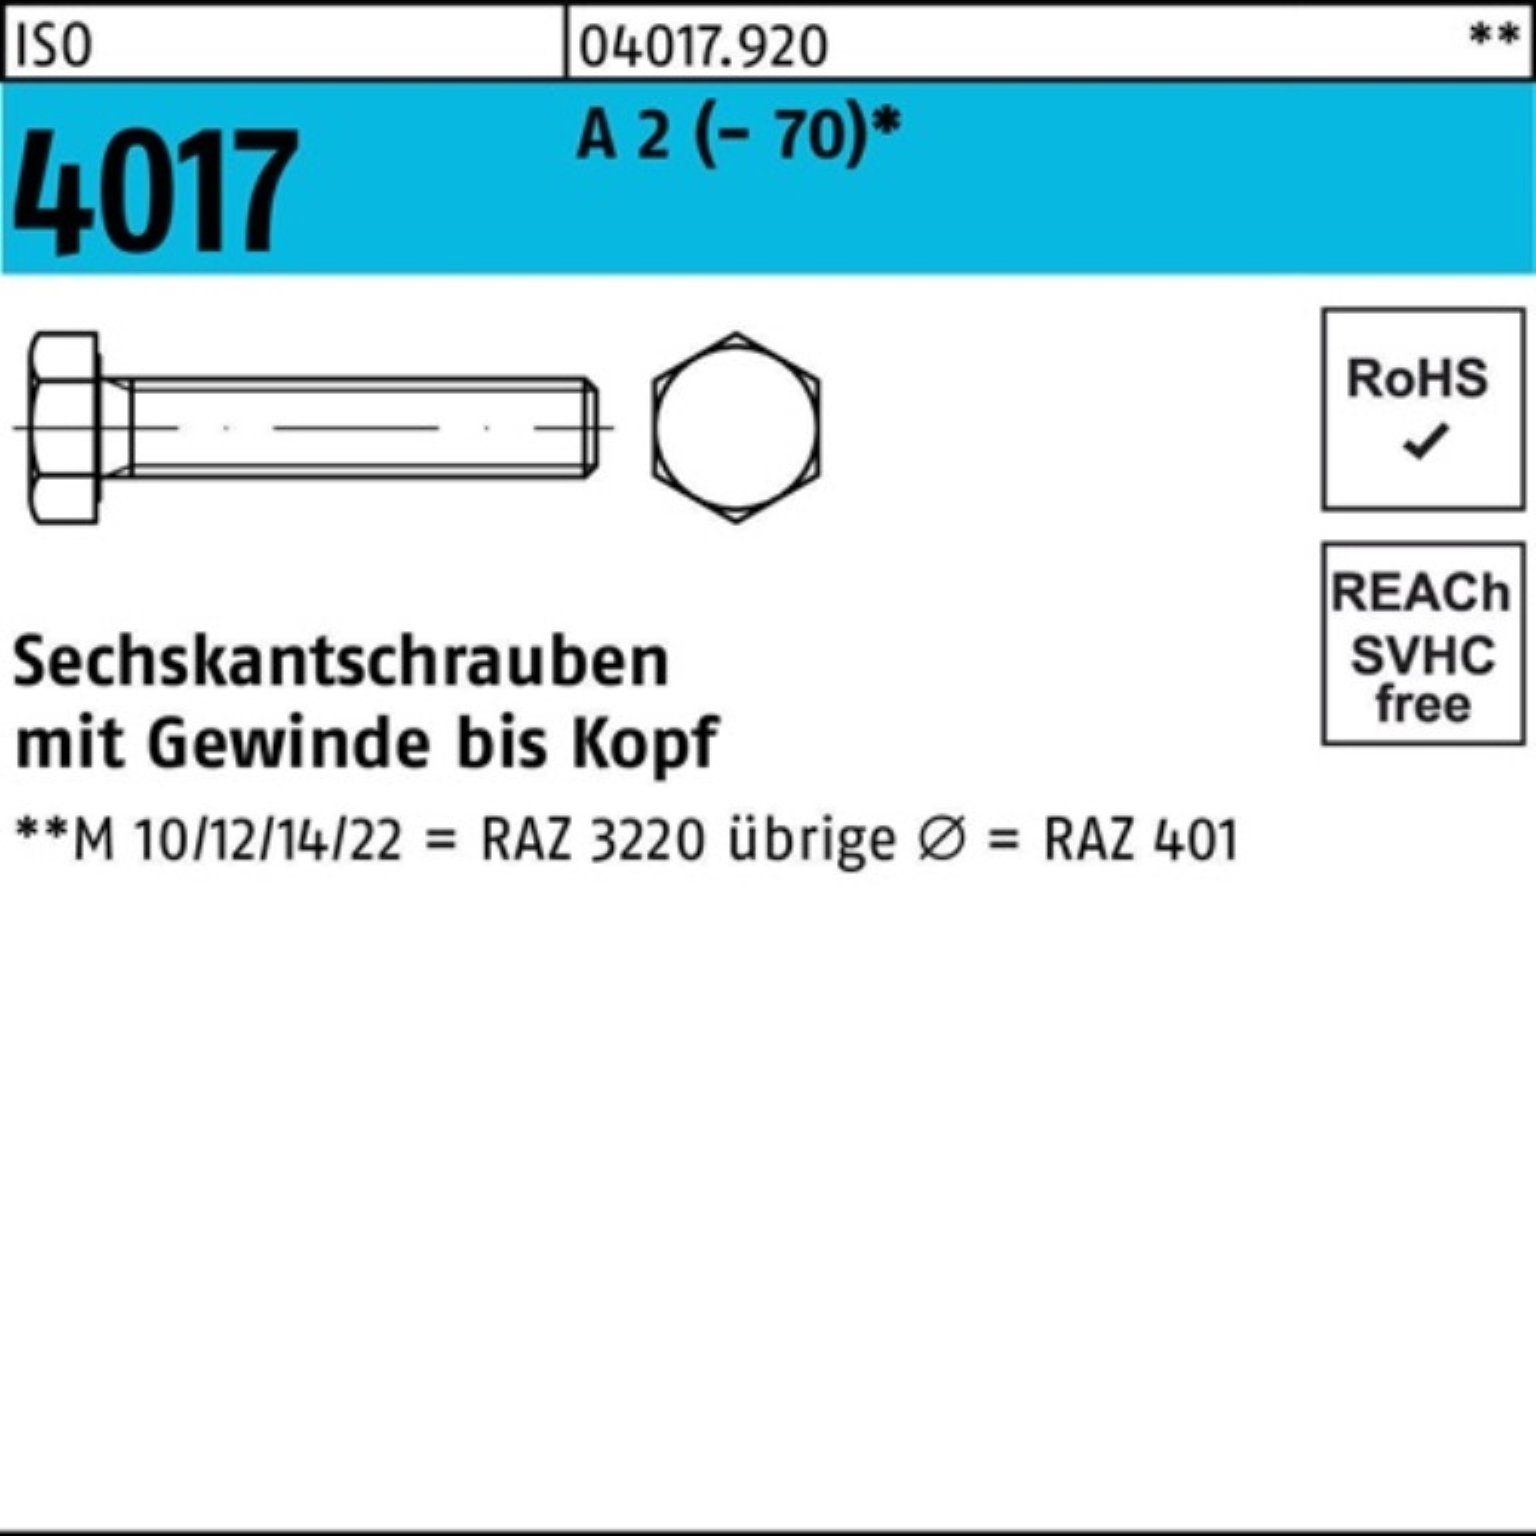 Bufab Sechskantschraube 100er Pack Sechskantschraube ISO 4017 VG M14x 50 A 2 (70) 50 Stück | Schrauben